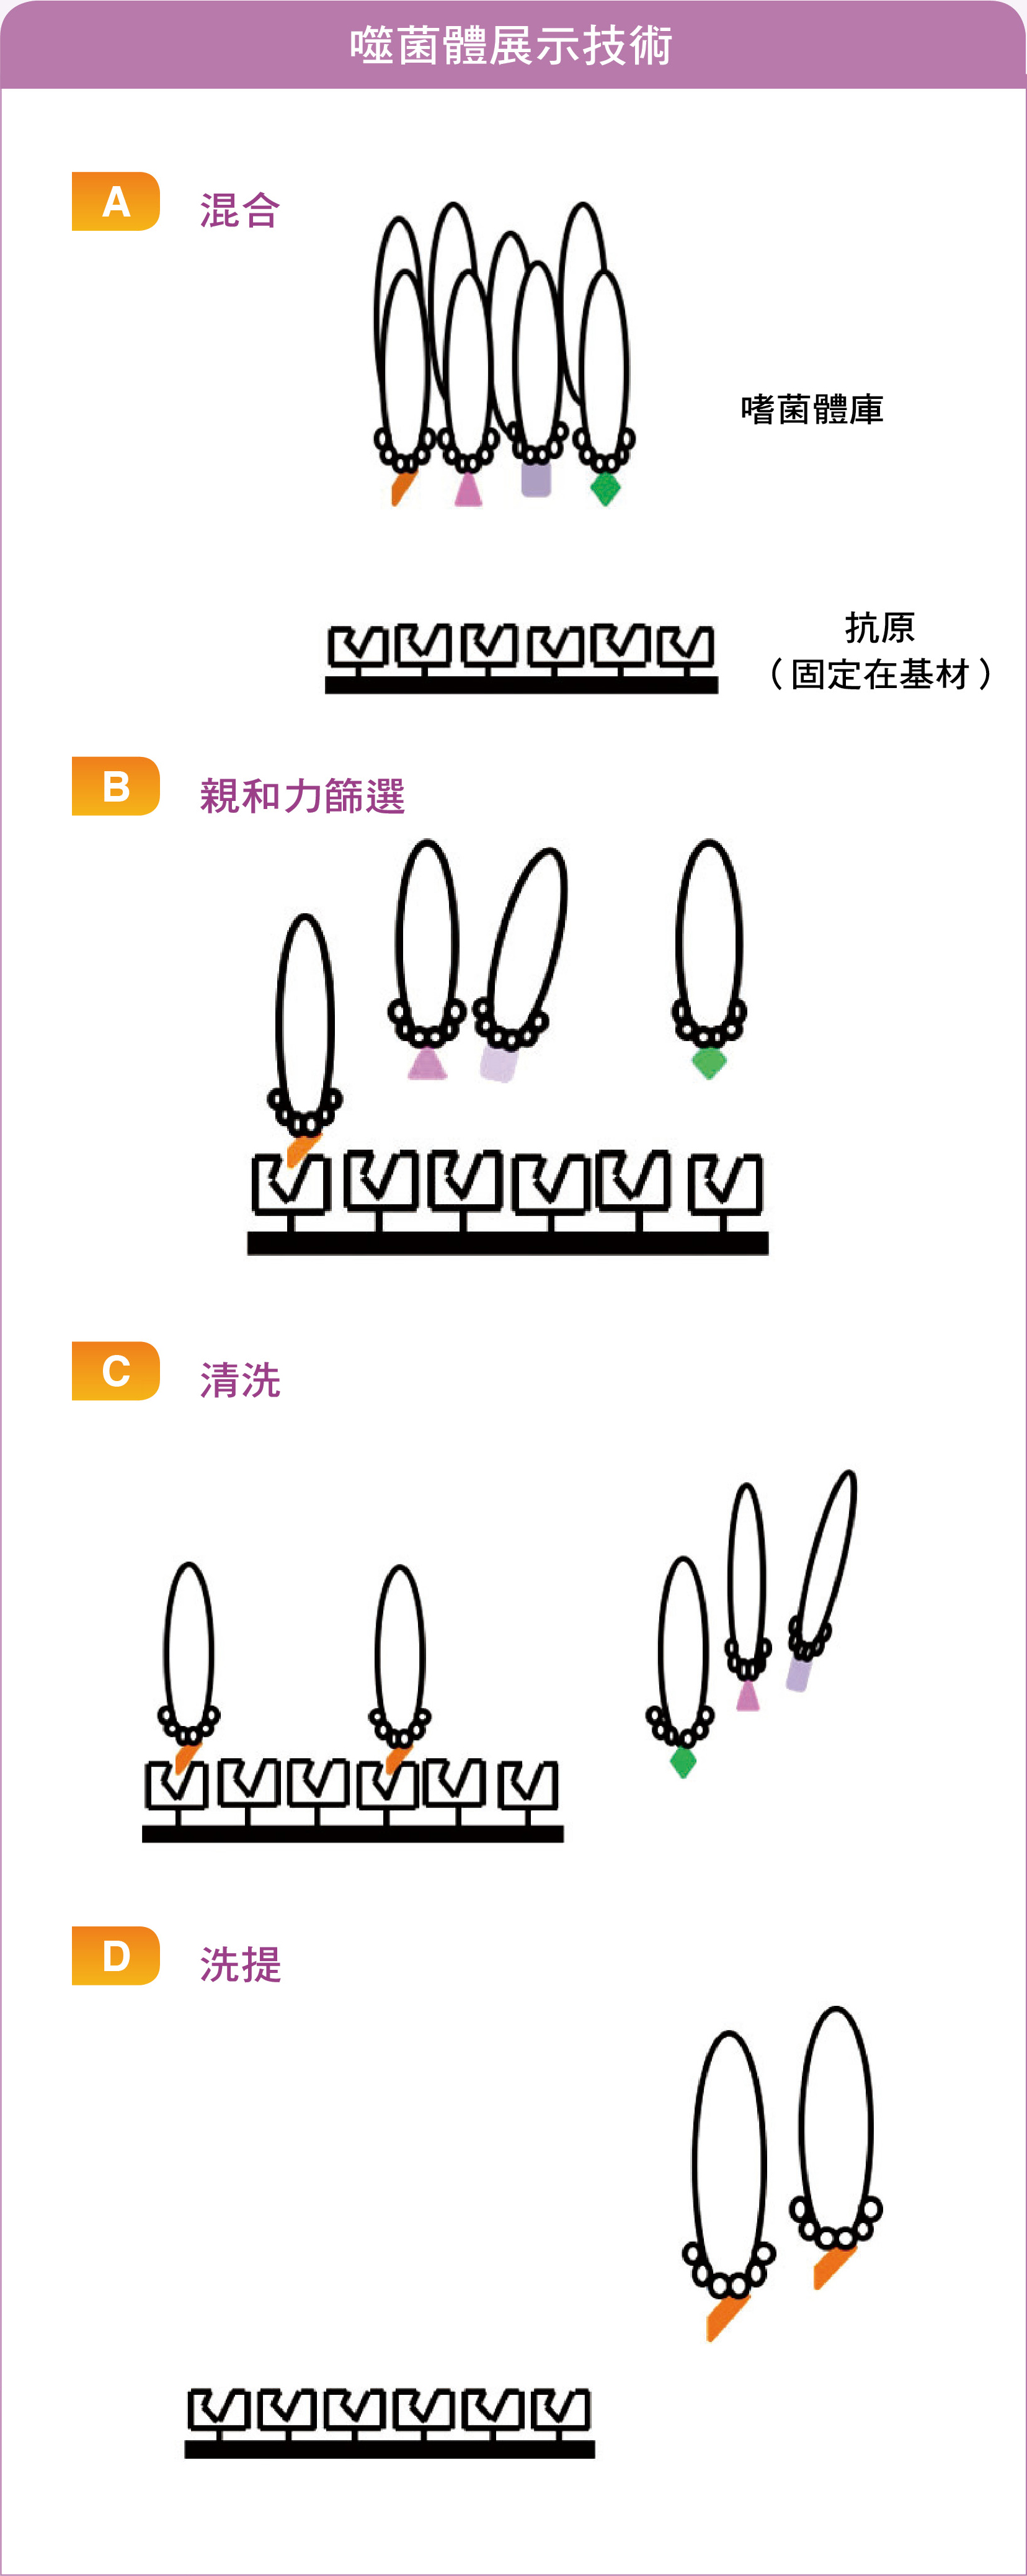 噬菌體展示技術：經過（A）～ （D）步驟後可得到對標的抗原具高度專一性的胜肽序列，若經過上述步驟所獲得的胜肽序列的專一性不如預期，可把（D）步驟所得到的噬菌體樣品重複進行（A）～ （D）步驟。